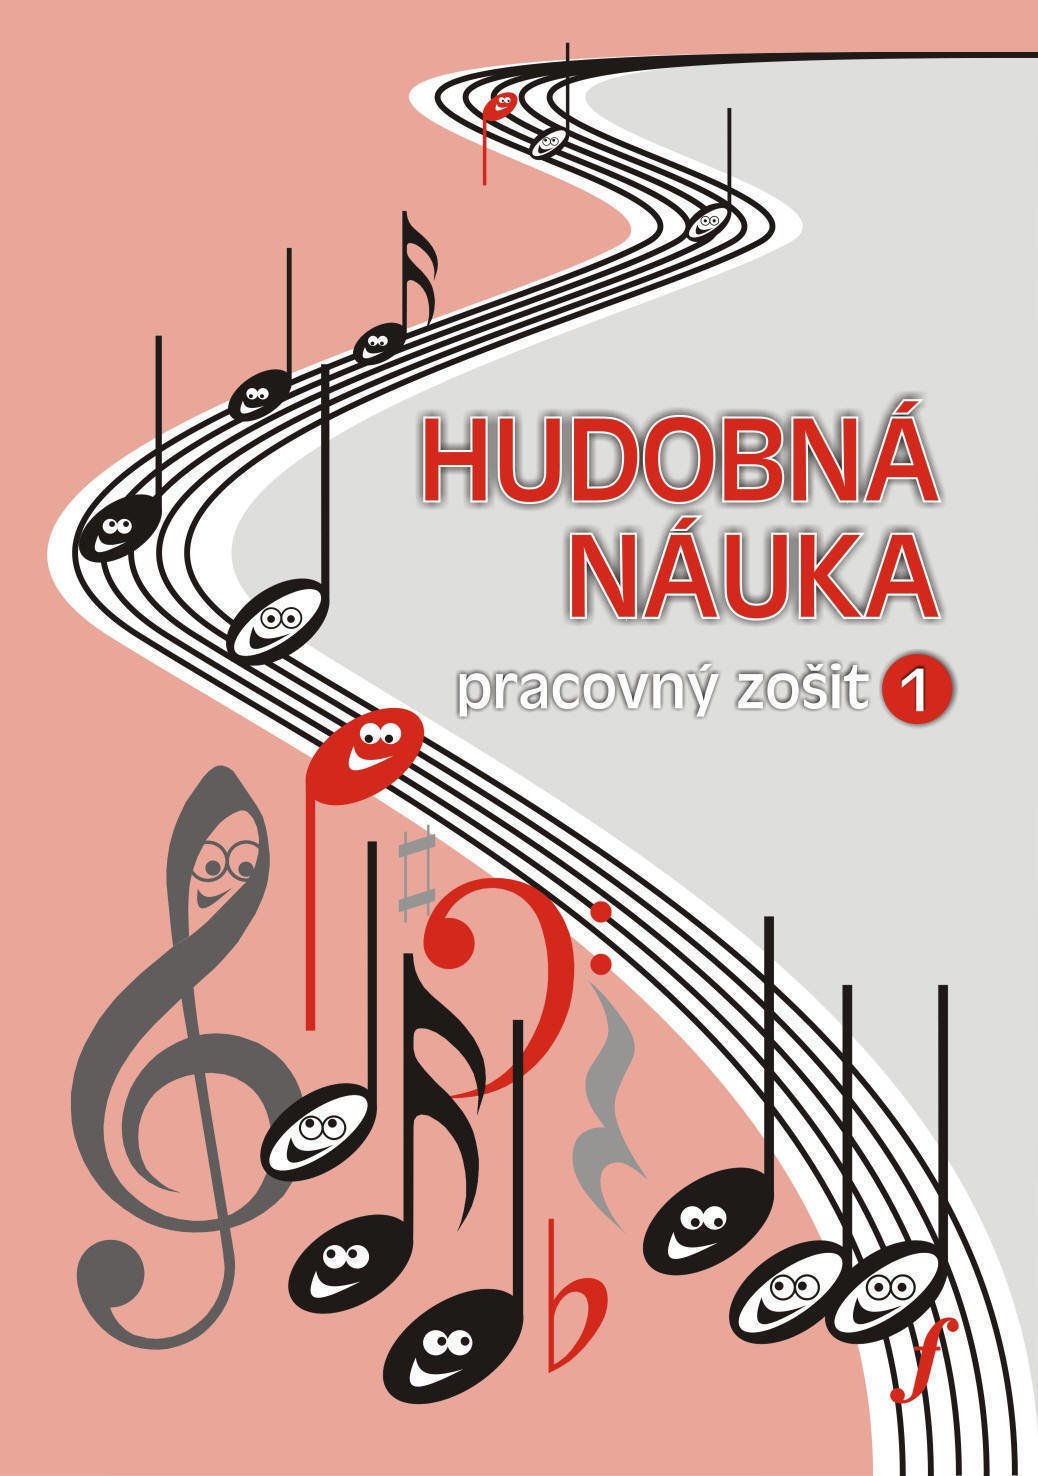 Educație muzicală Martin Vozar Hudobná náuka 1 - pracovný zošit Partituri